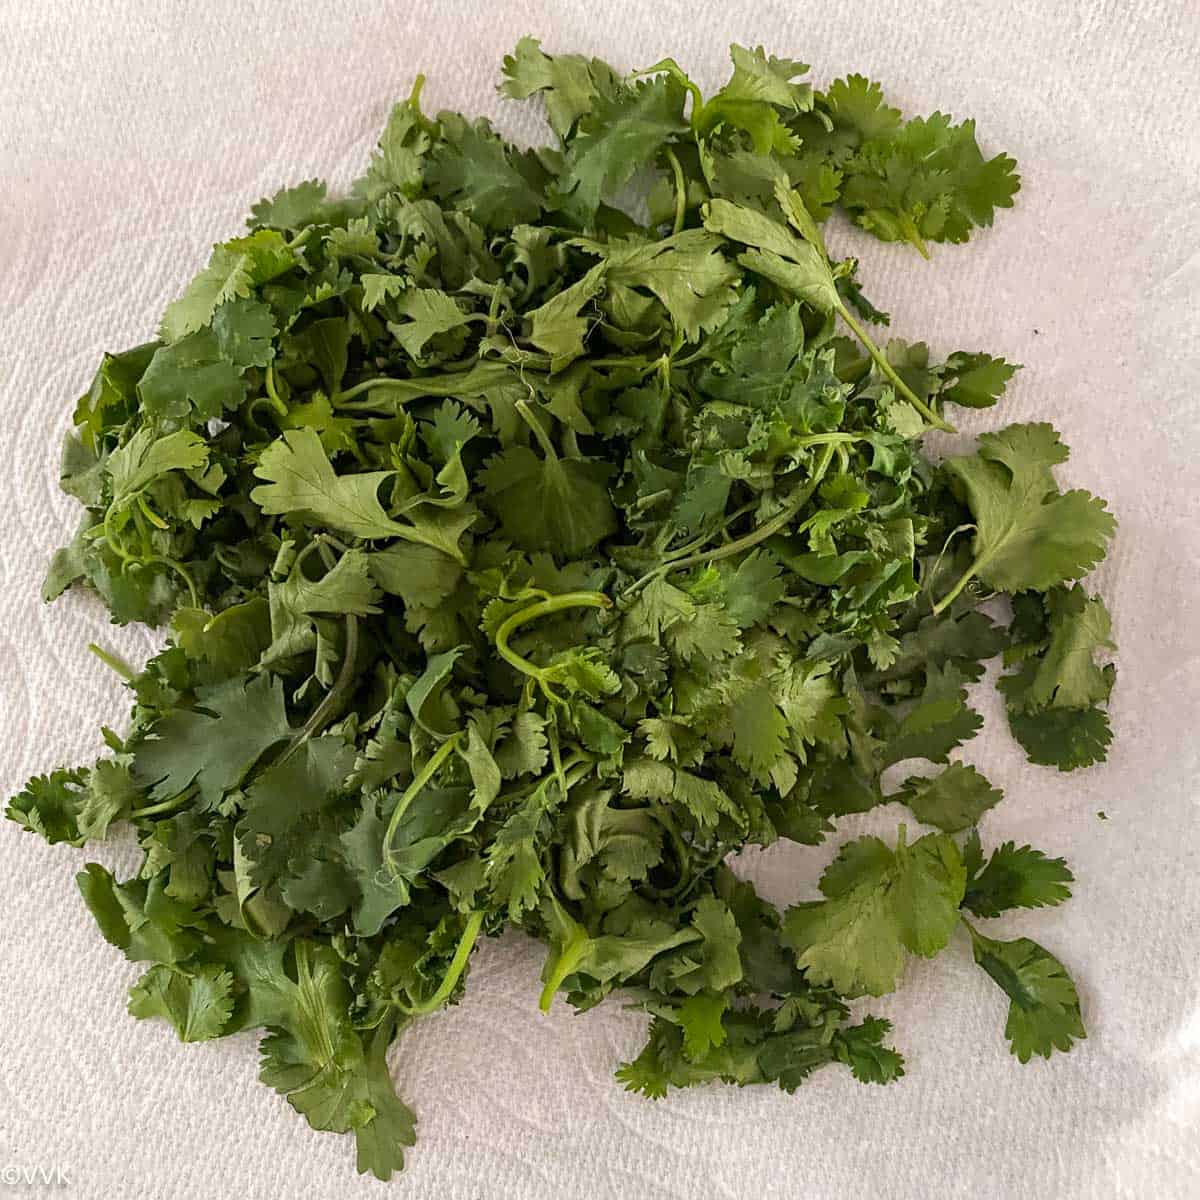 dried cilantro